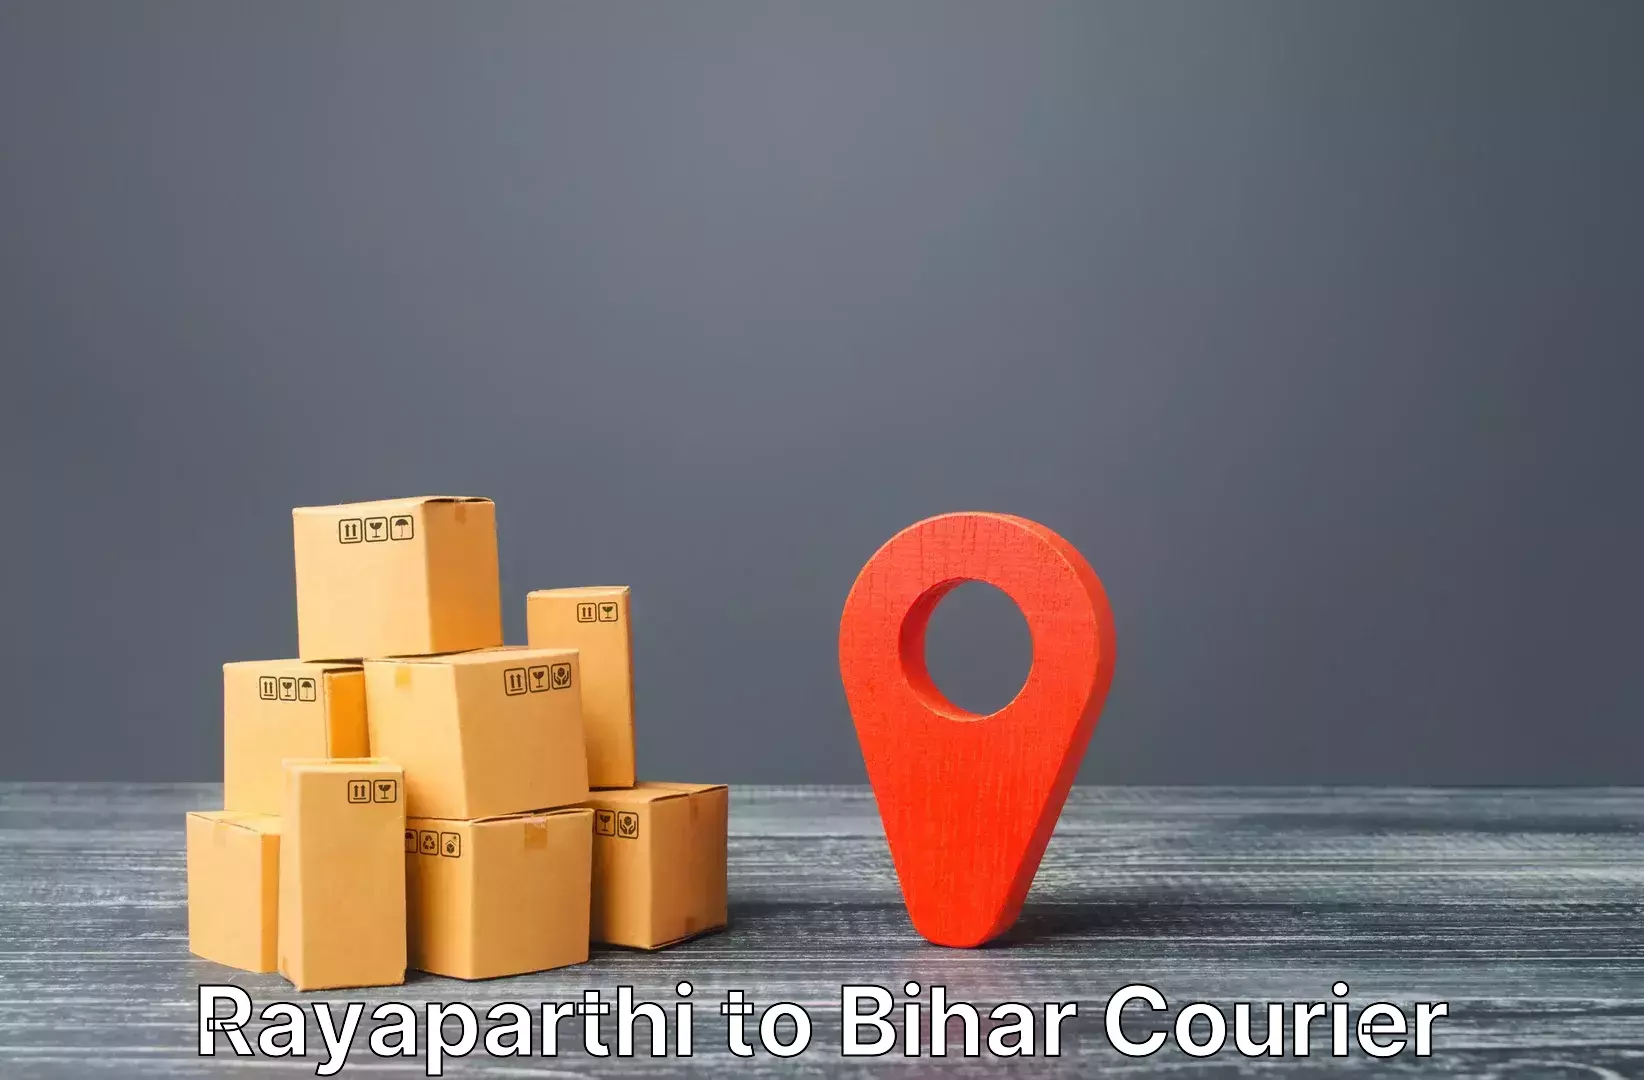 Nationwide luggage courier Rayaparthi to Brahmapur